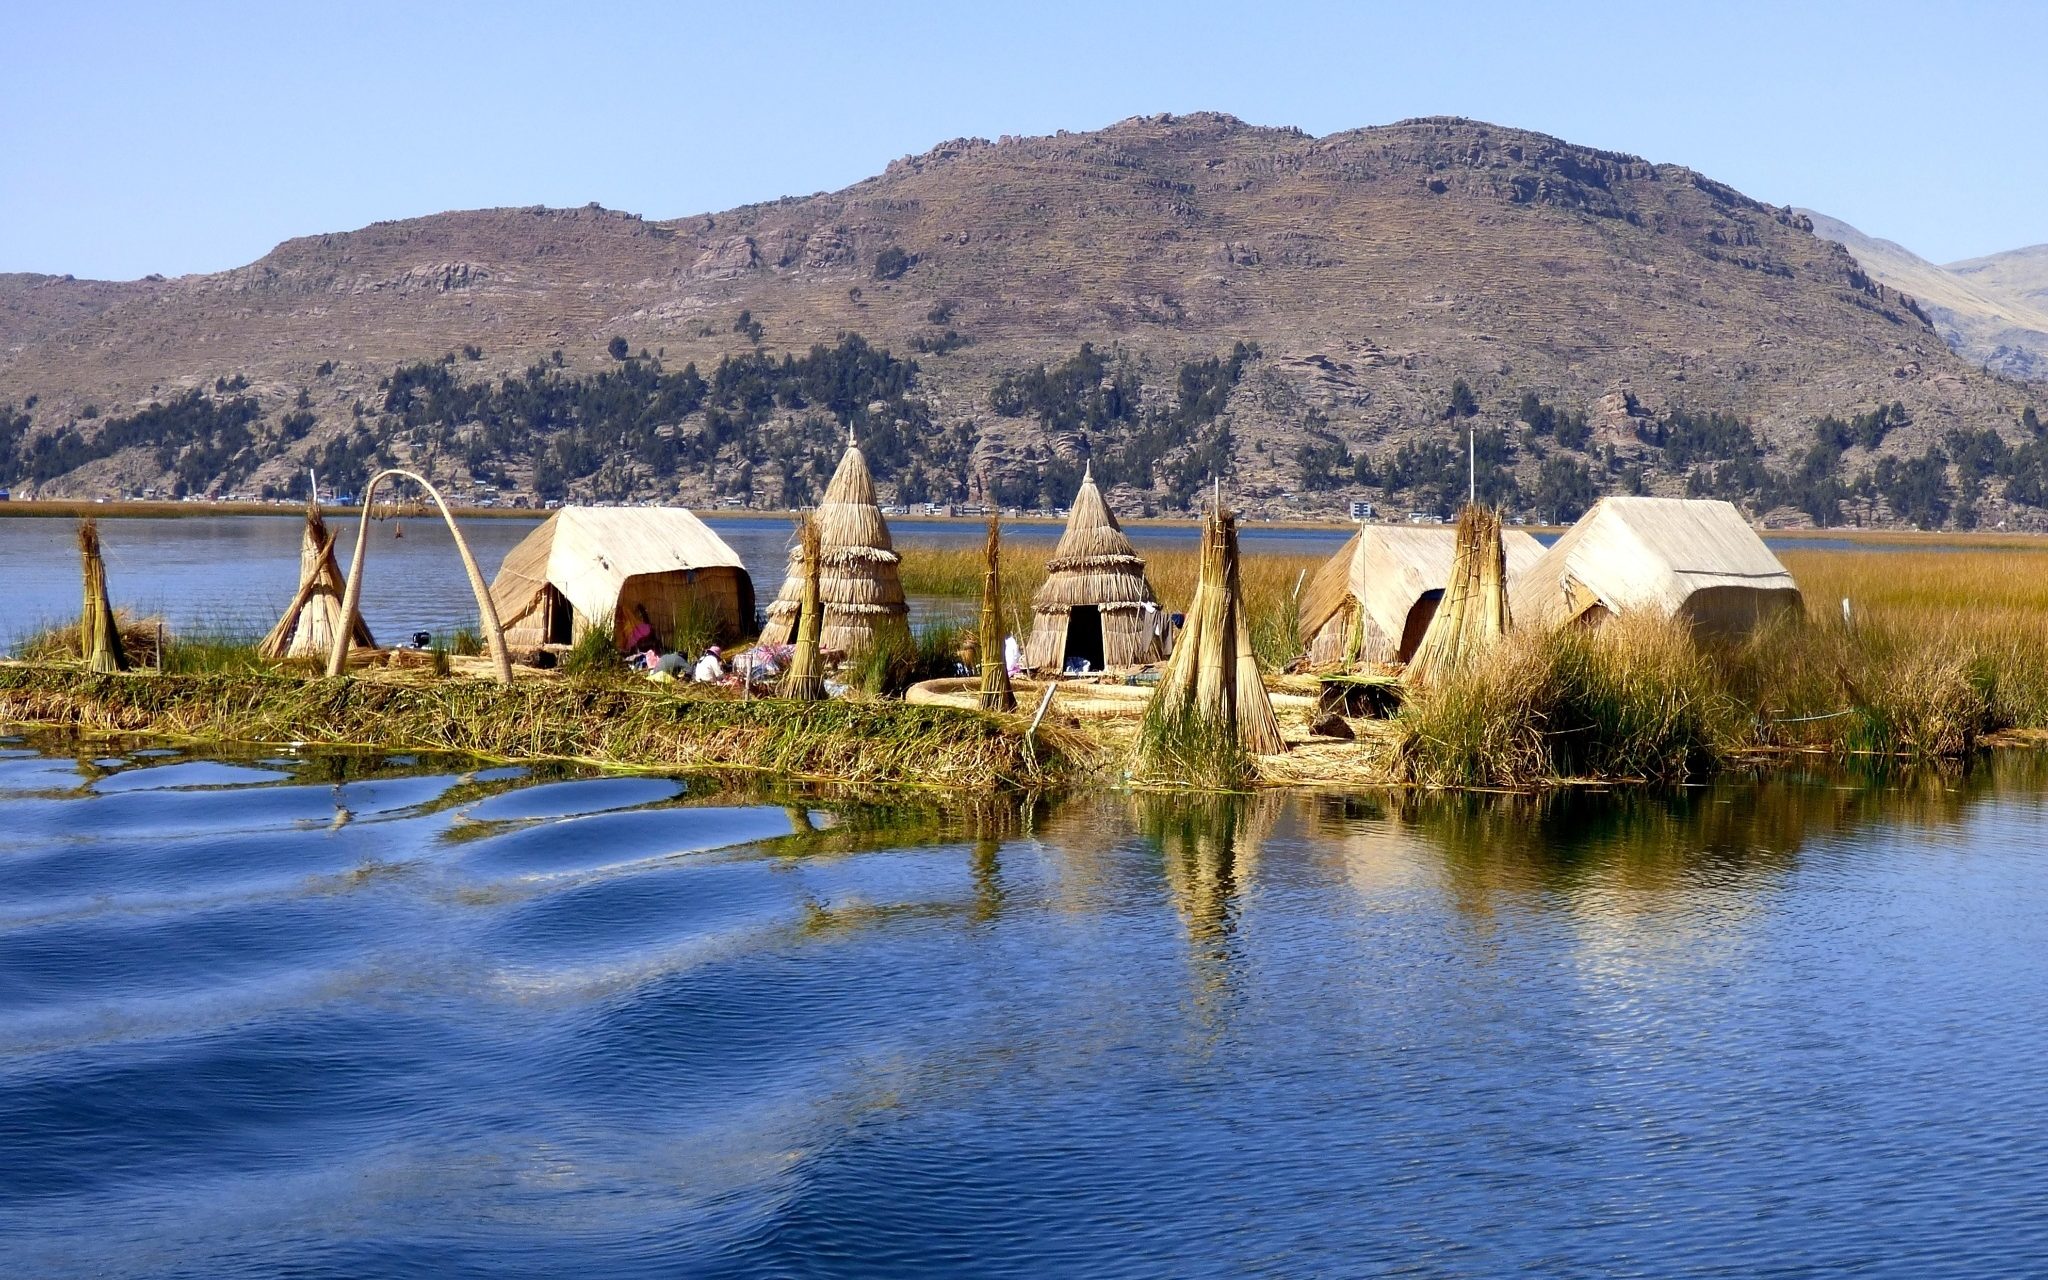 Lake-Titicaca-3-day-itinerary-island-kusa-treks-e1550519793565.jpg